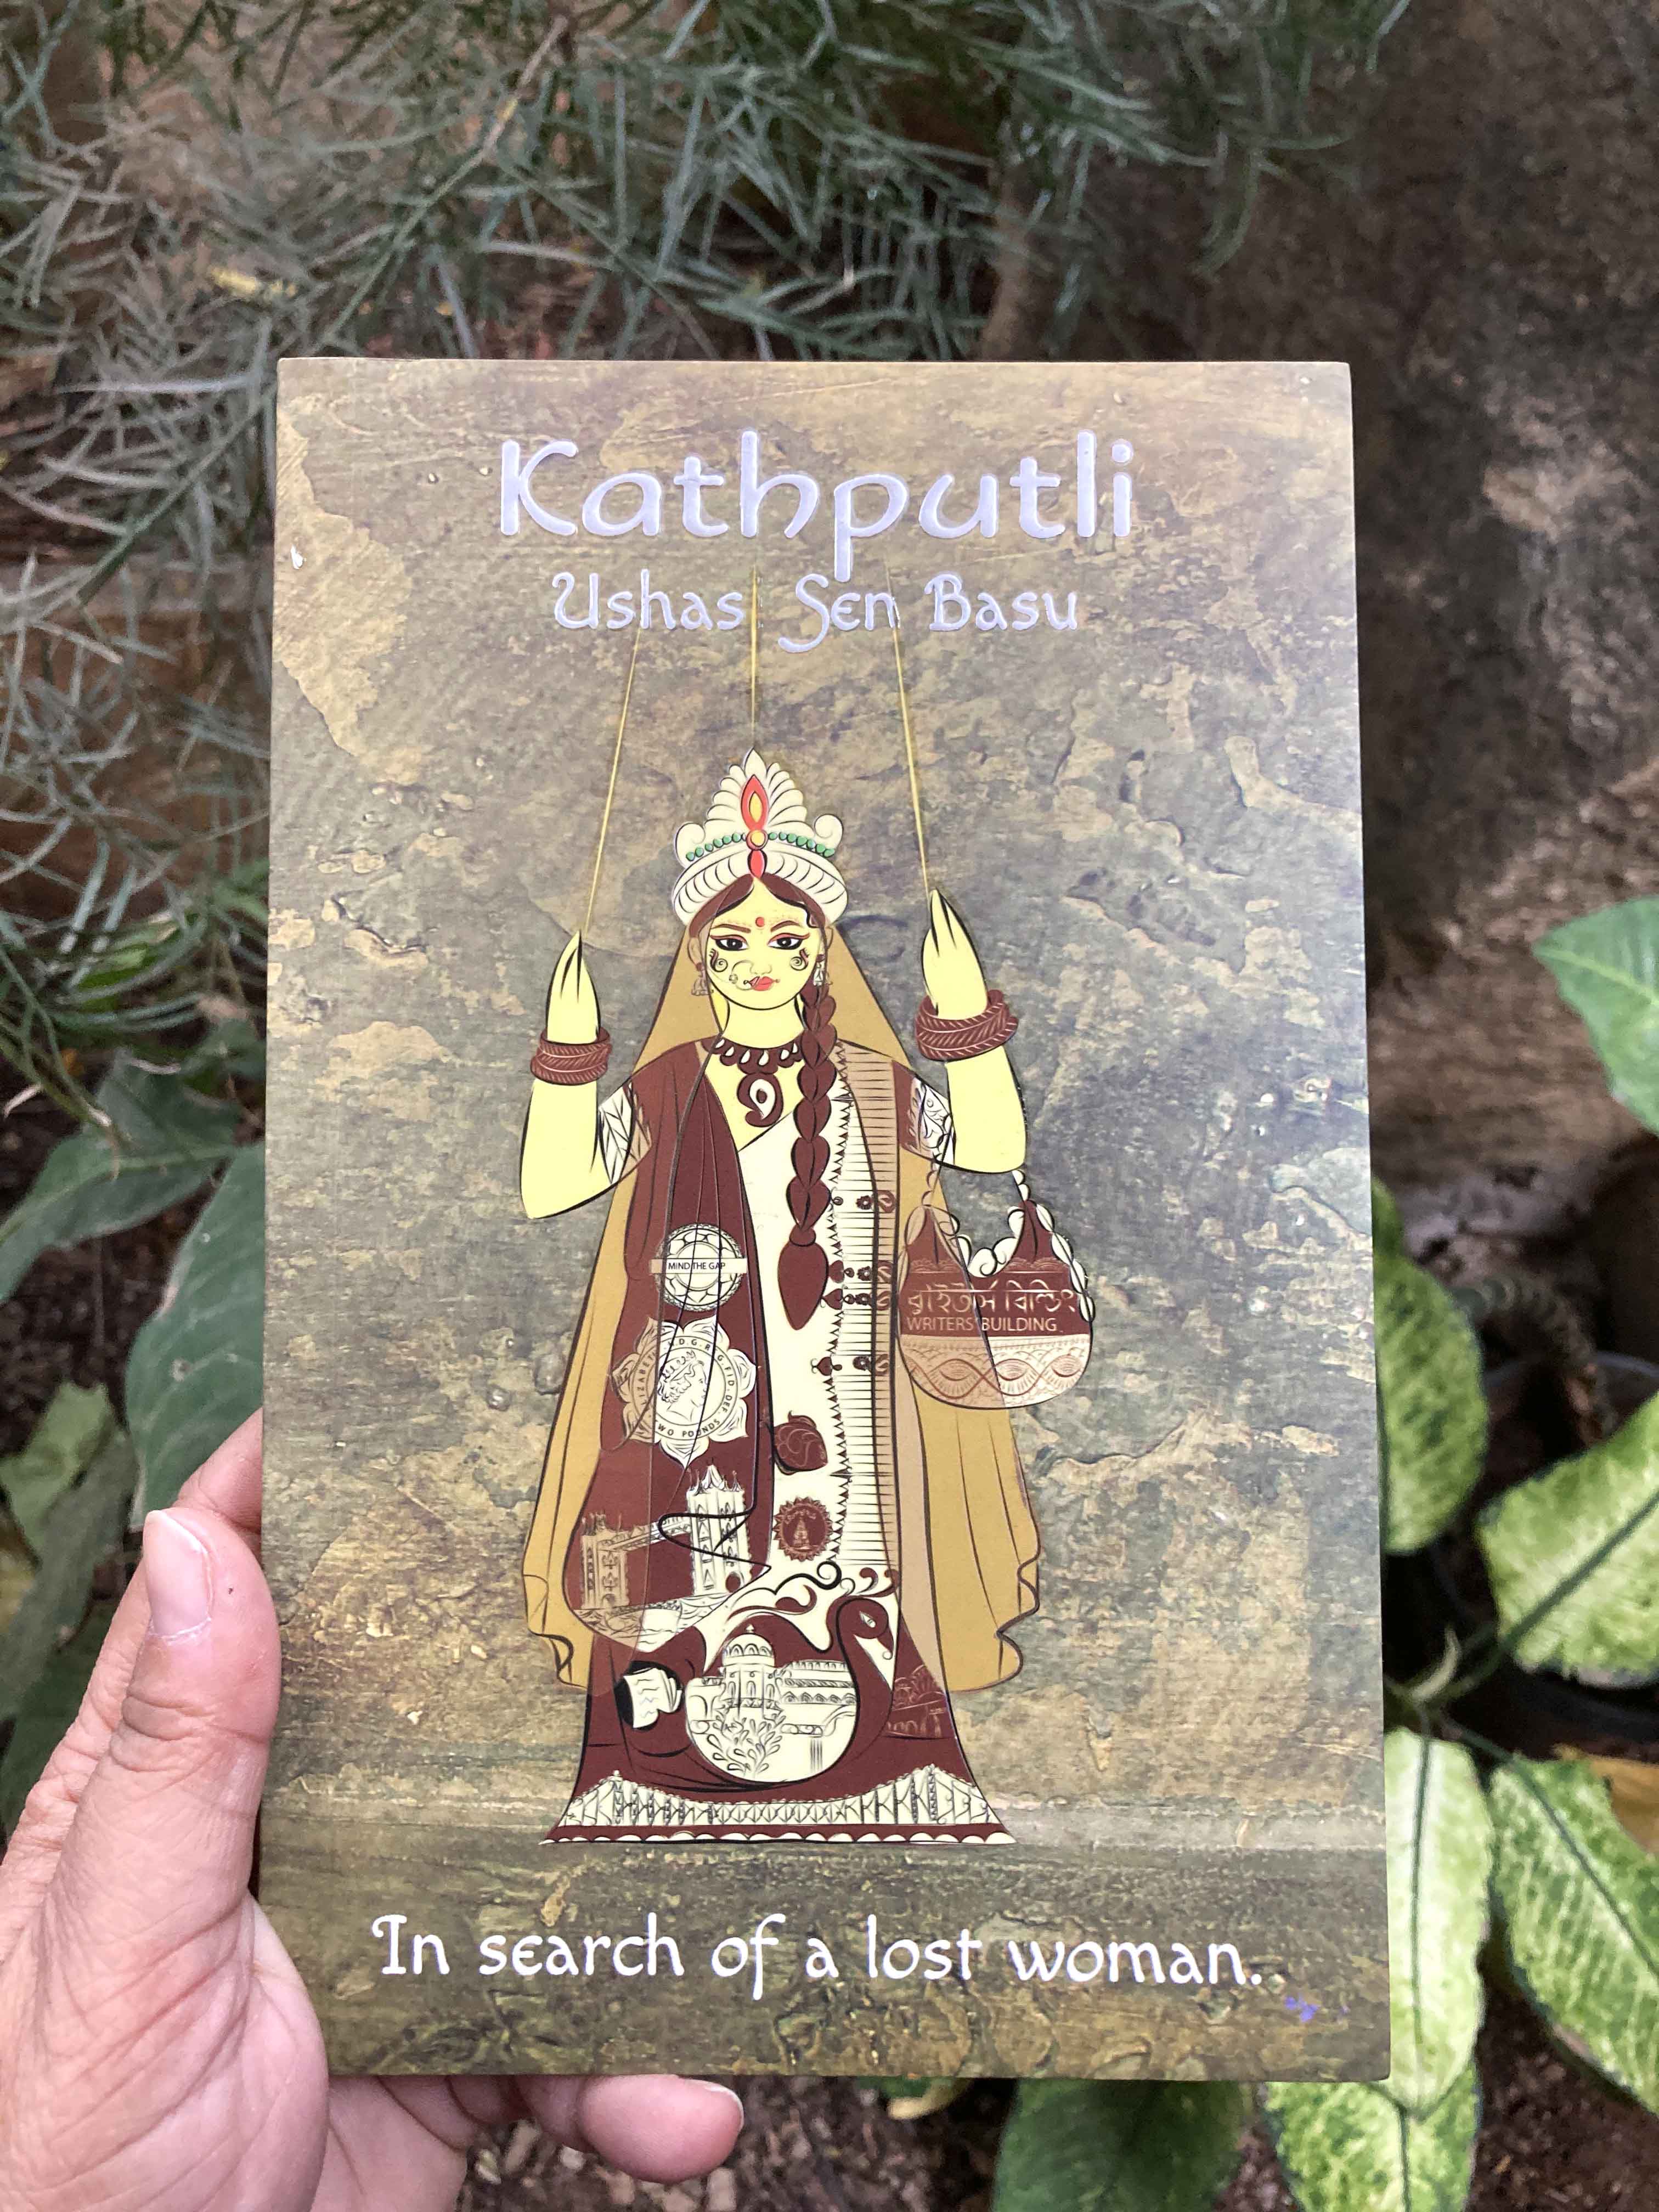 Kathputli by Ushasi Sen Basu